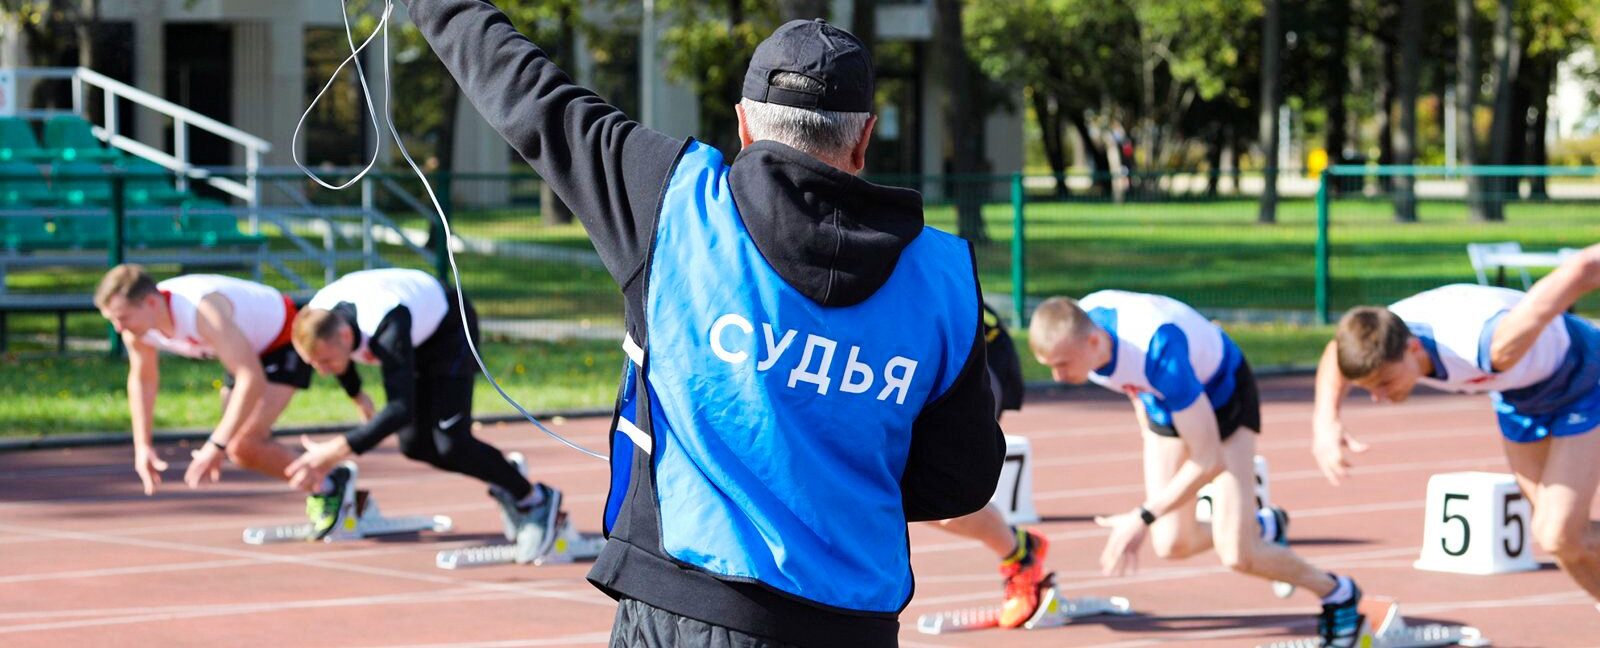 Год назад участие в мероприятии приняли порядка 3 000 спортсменов. Фото: сайт мэра Москвы